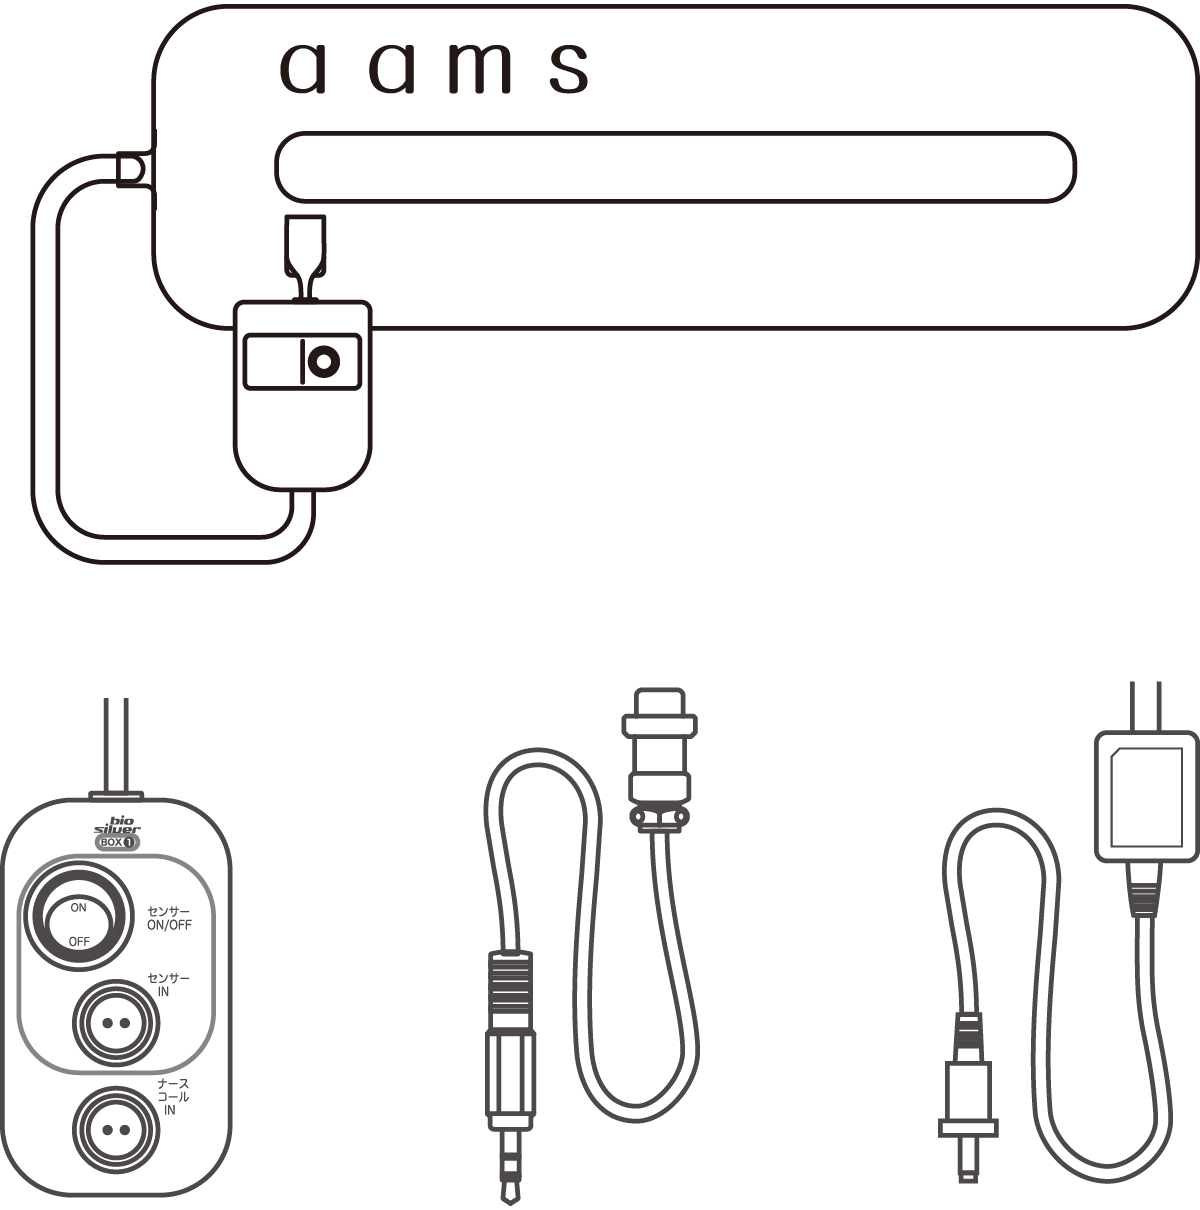 aams.介護 ナースコール接続セット画像